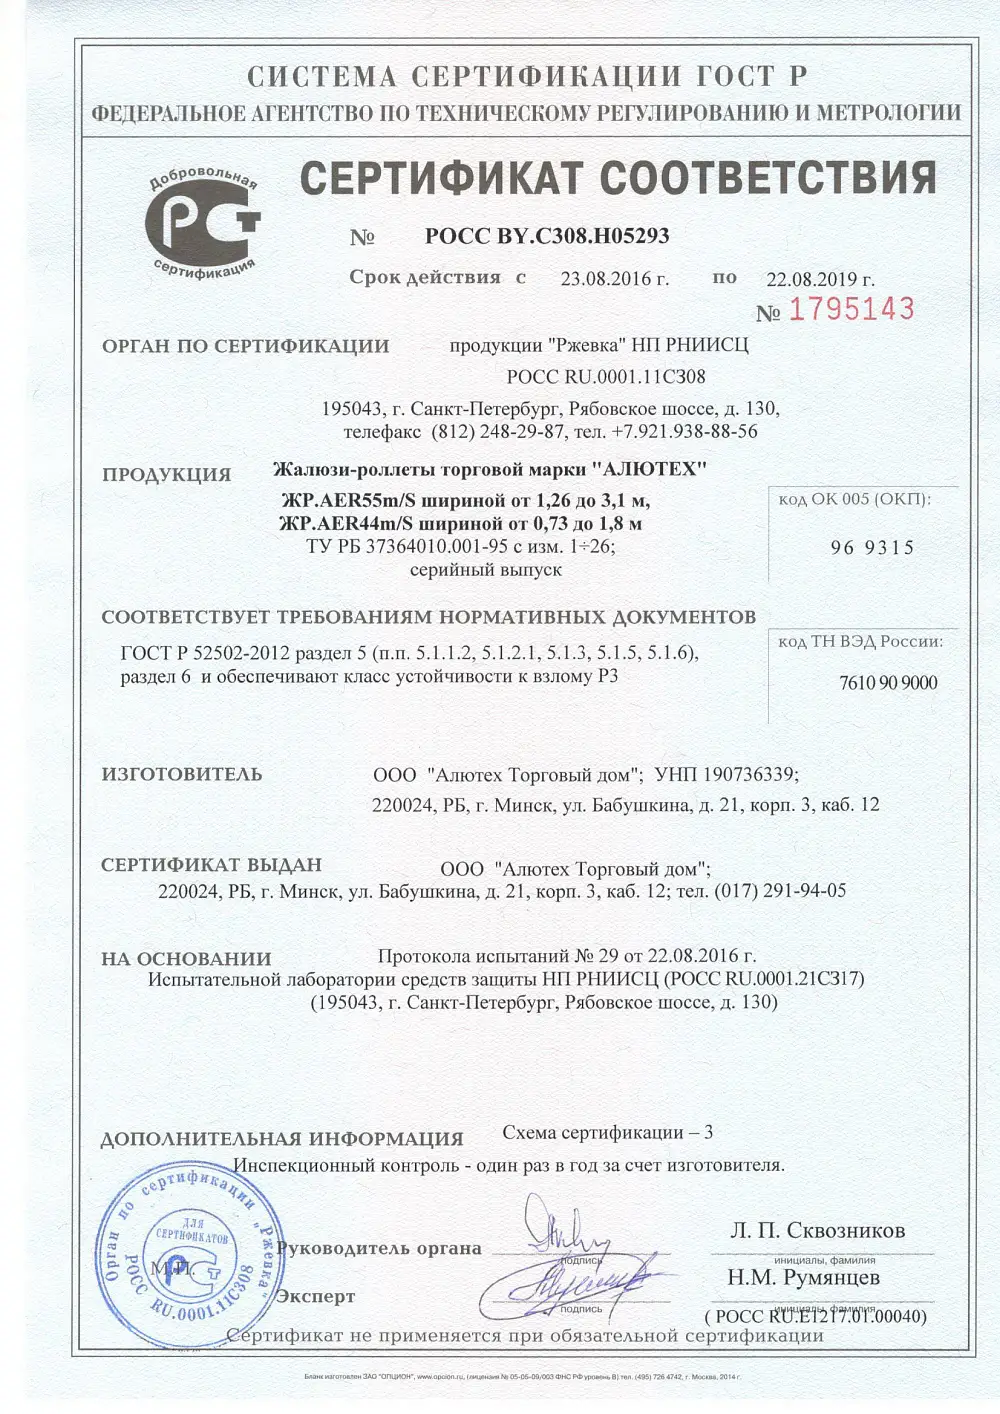 Сертификат соответствия ГОСТ Р 52502-2012 для роллет AER44m/S и AER55m/S